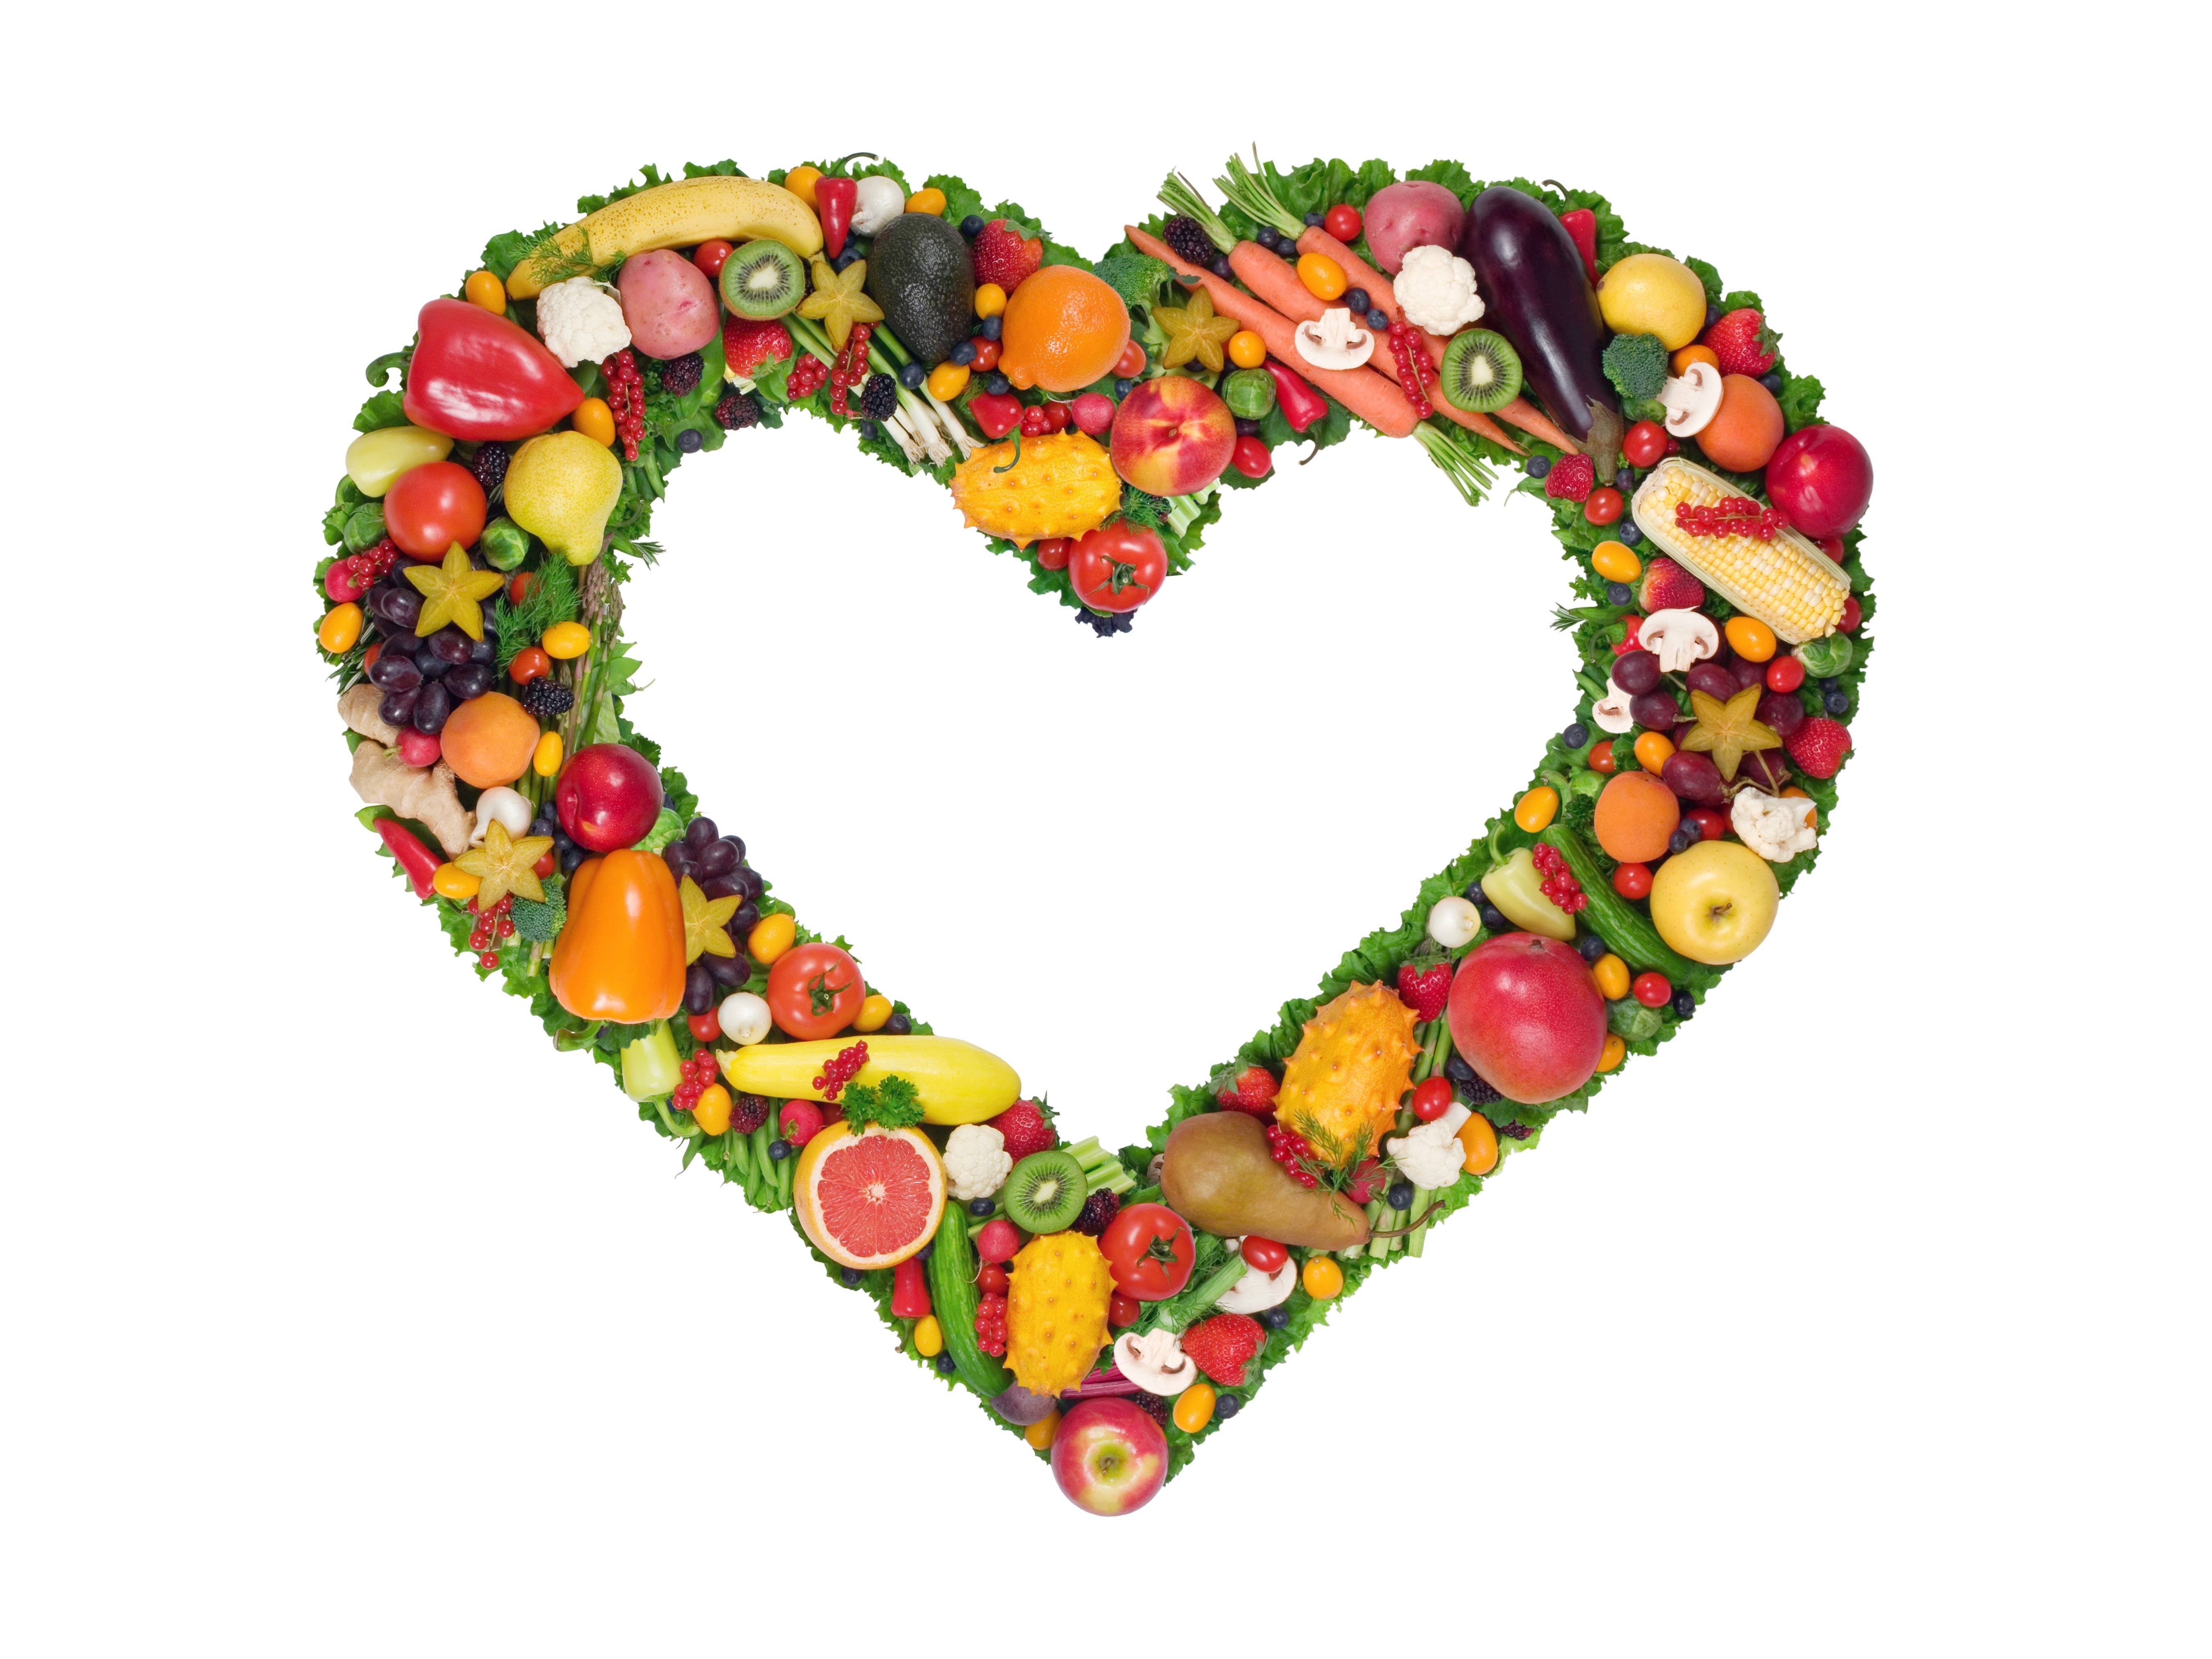 Фруктовые сердца. Сердечко из овощей. Сердце из фруктов. Сердечко из фруктов. Сердечко из овощей и фруктов.